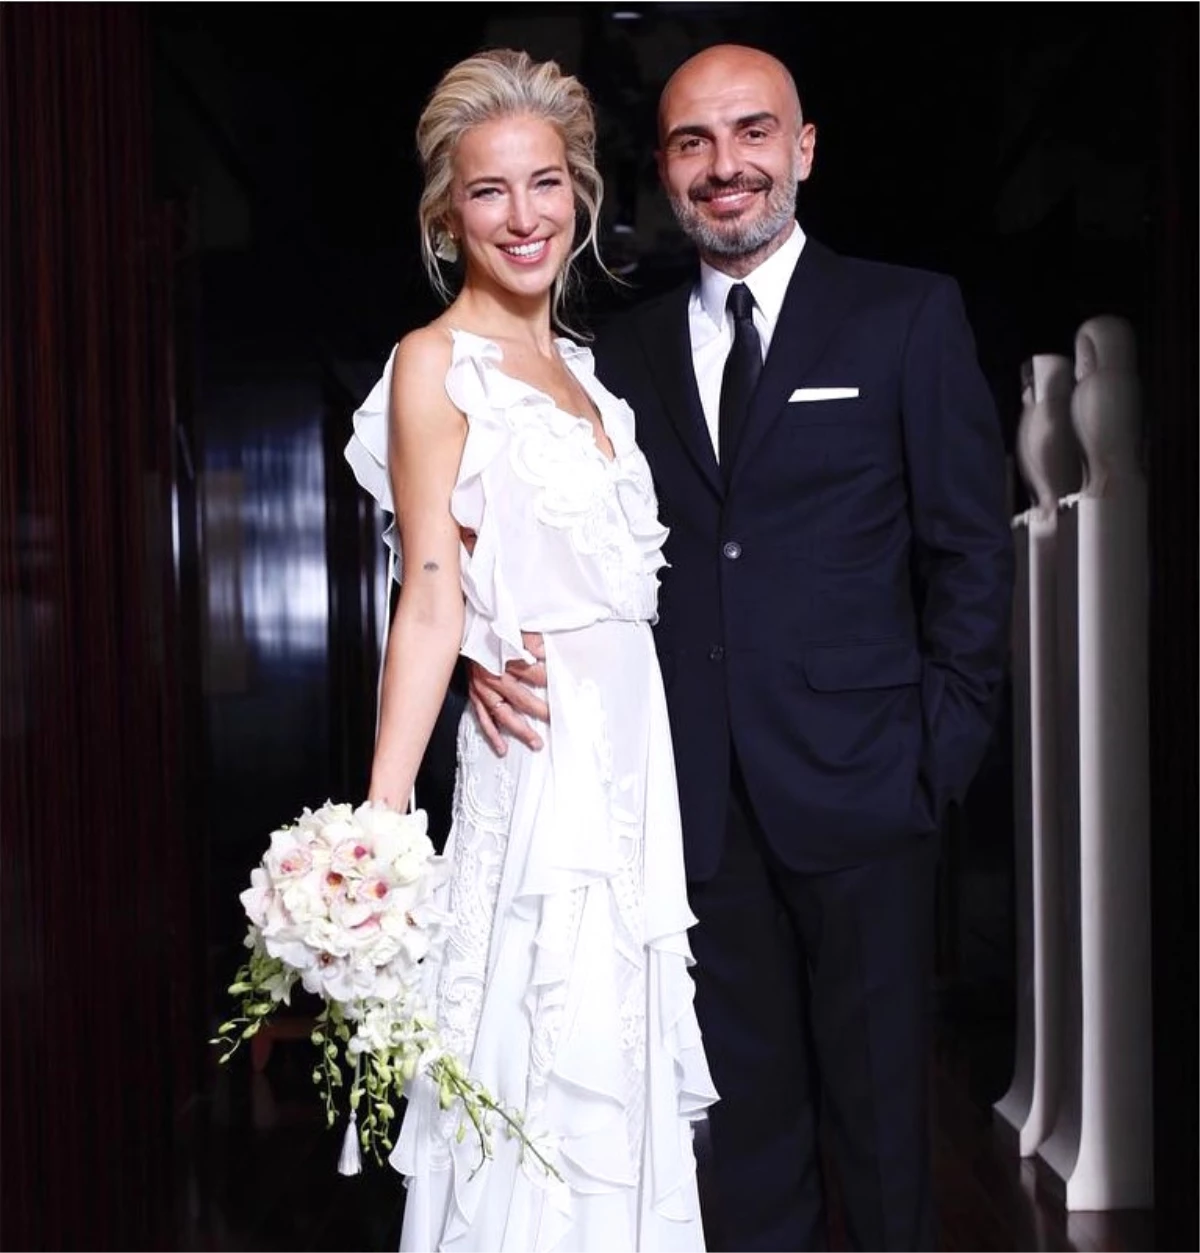 Burcu Esmersoy Nikah Sonrası Soyadını "Suyabatmaz" Olarak Güncelledi